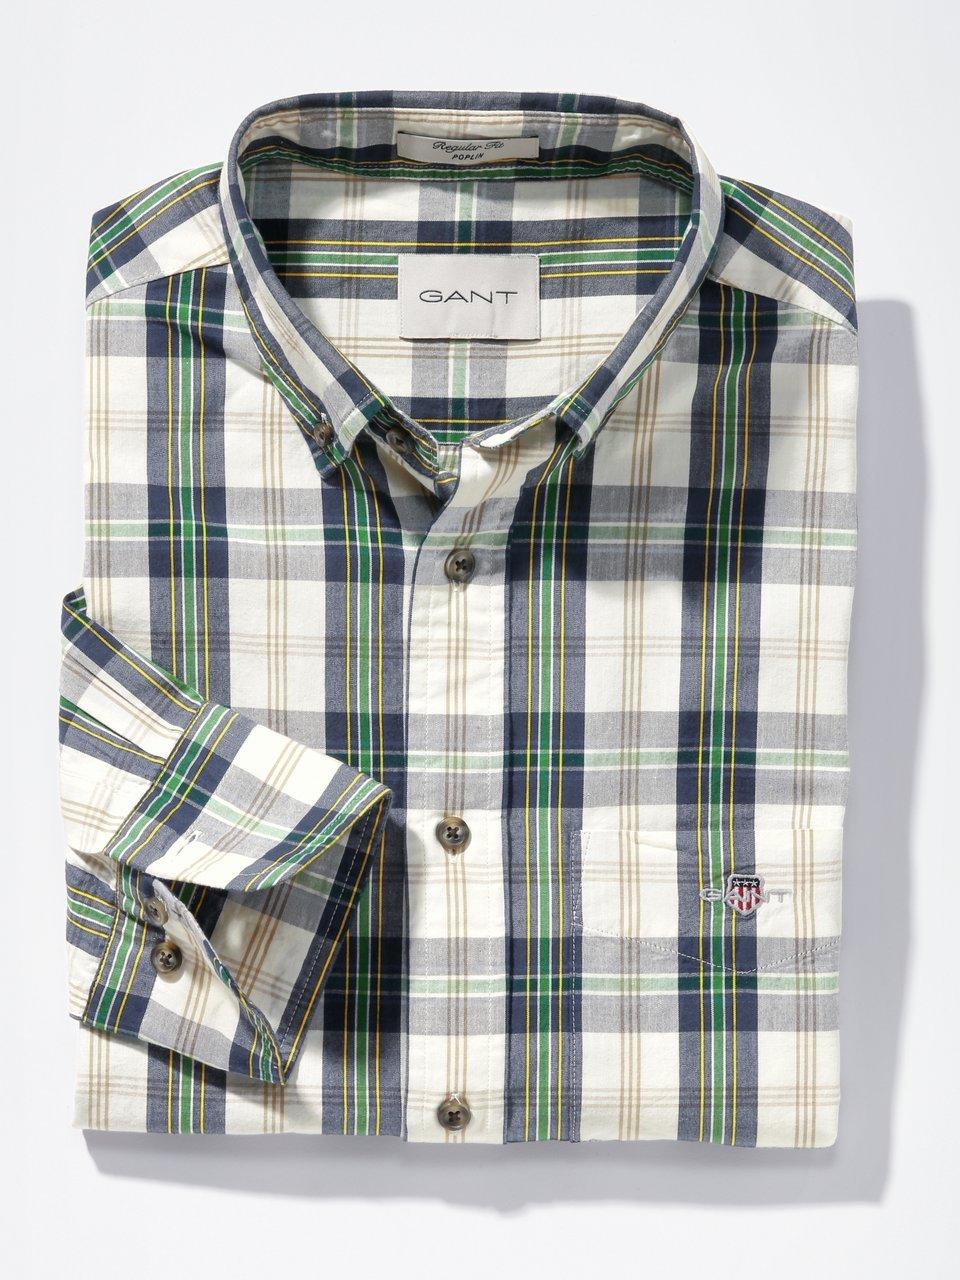 GANT - La chemise oxford en 100% coton